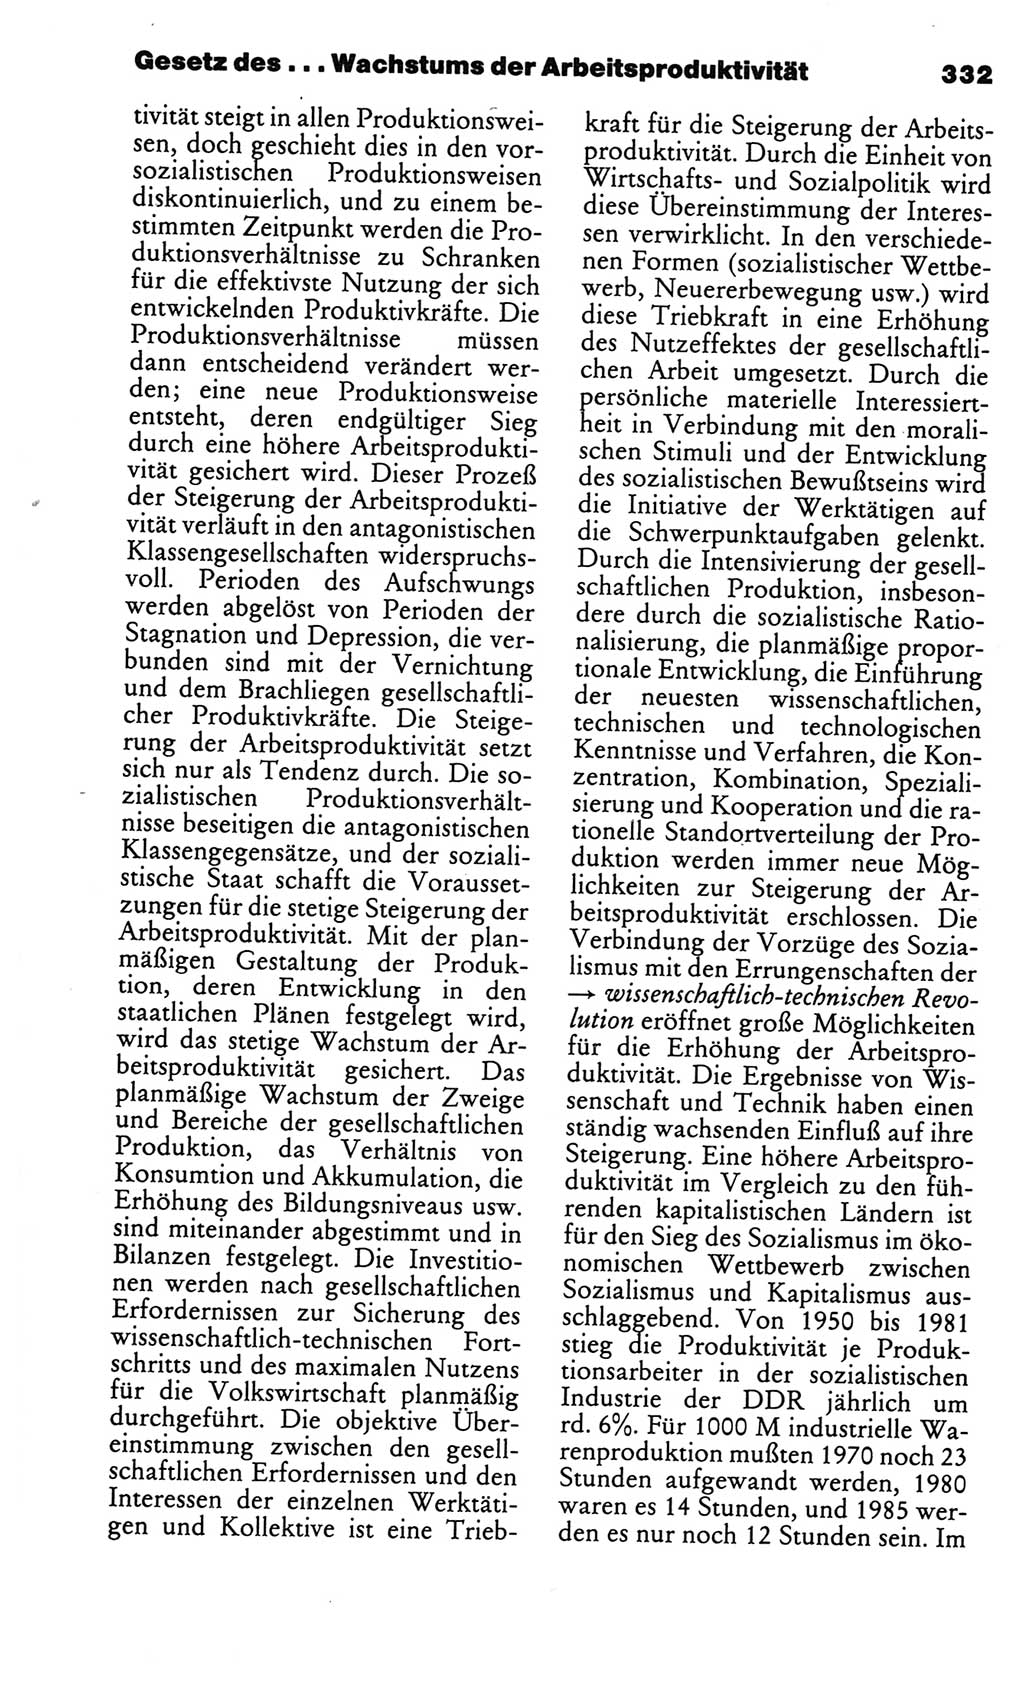 Kleines politisches Wörterbuch [Deutsche Demokratische Republik (DDR)] 1986, Seite 332 (Kl. pol. Wb. DDR 1986, S. 332)